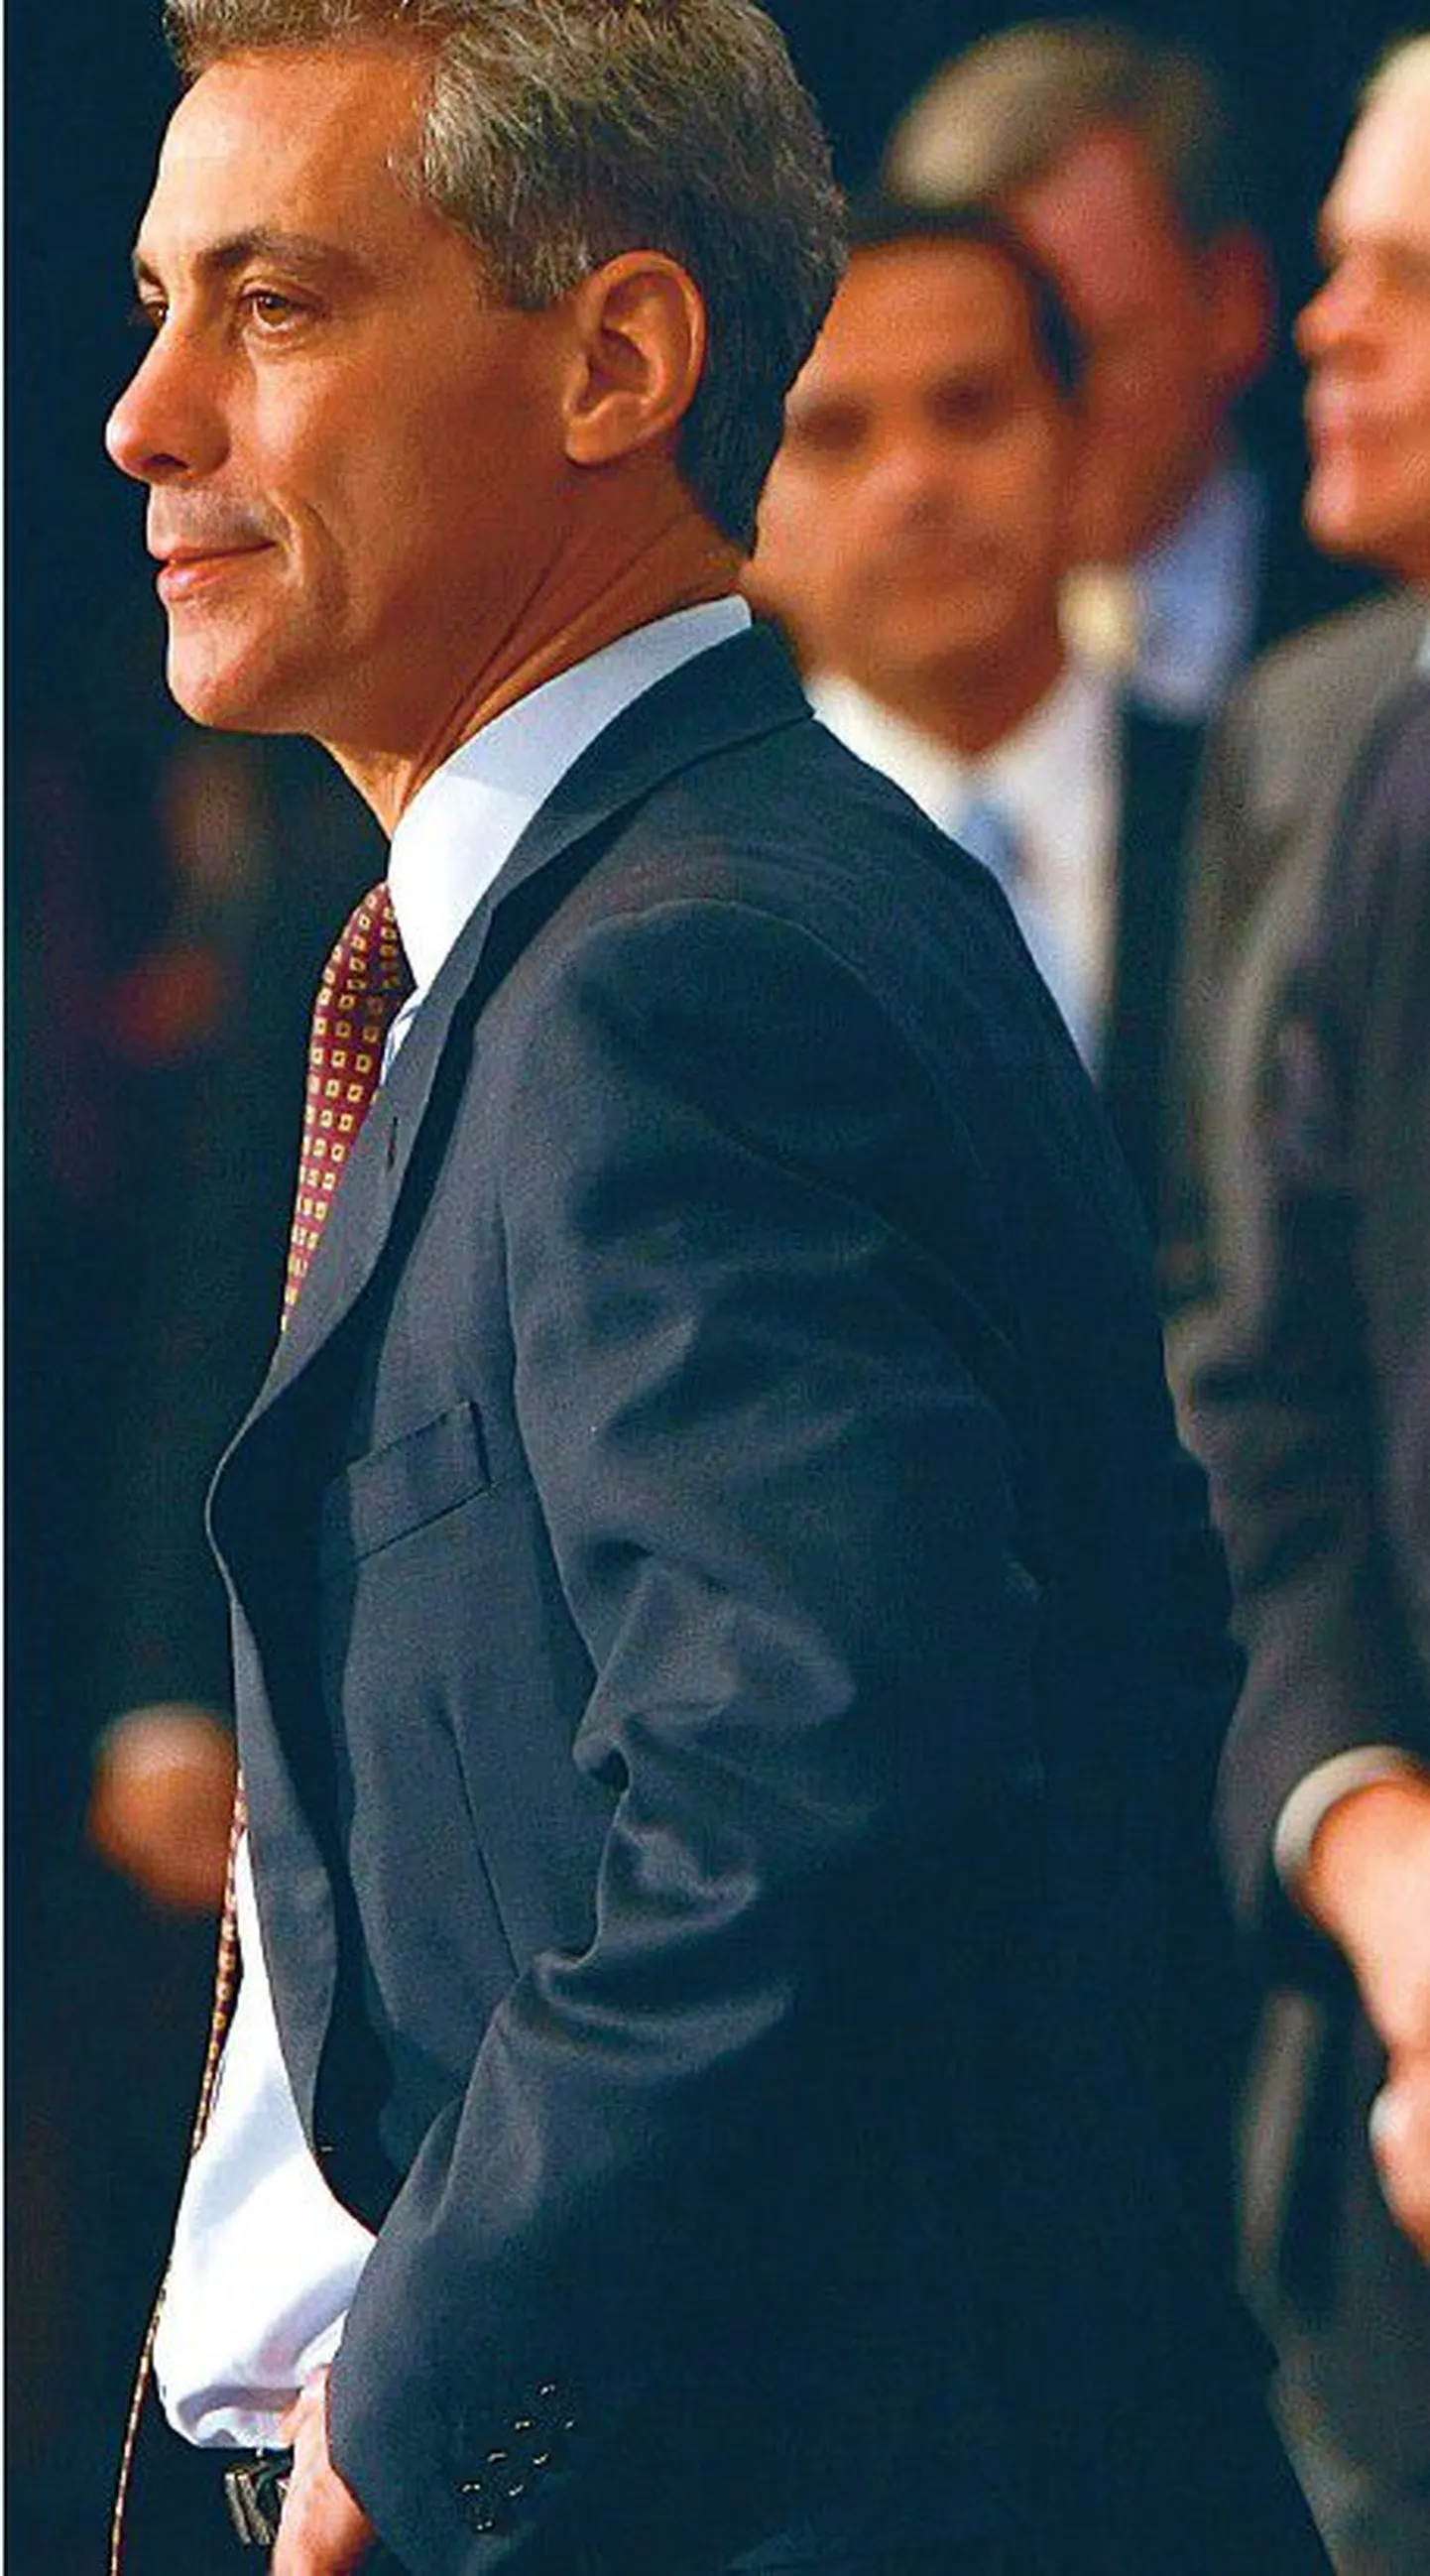 Barack Obama kantseleiülema koha vastu võtnud Rahm Emanueli iseloomustatakse kui meest, kes on oma partei või ülemuse nimel kõigeks valmis.